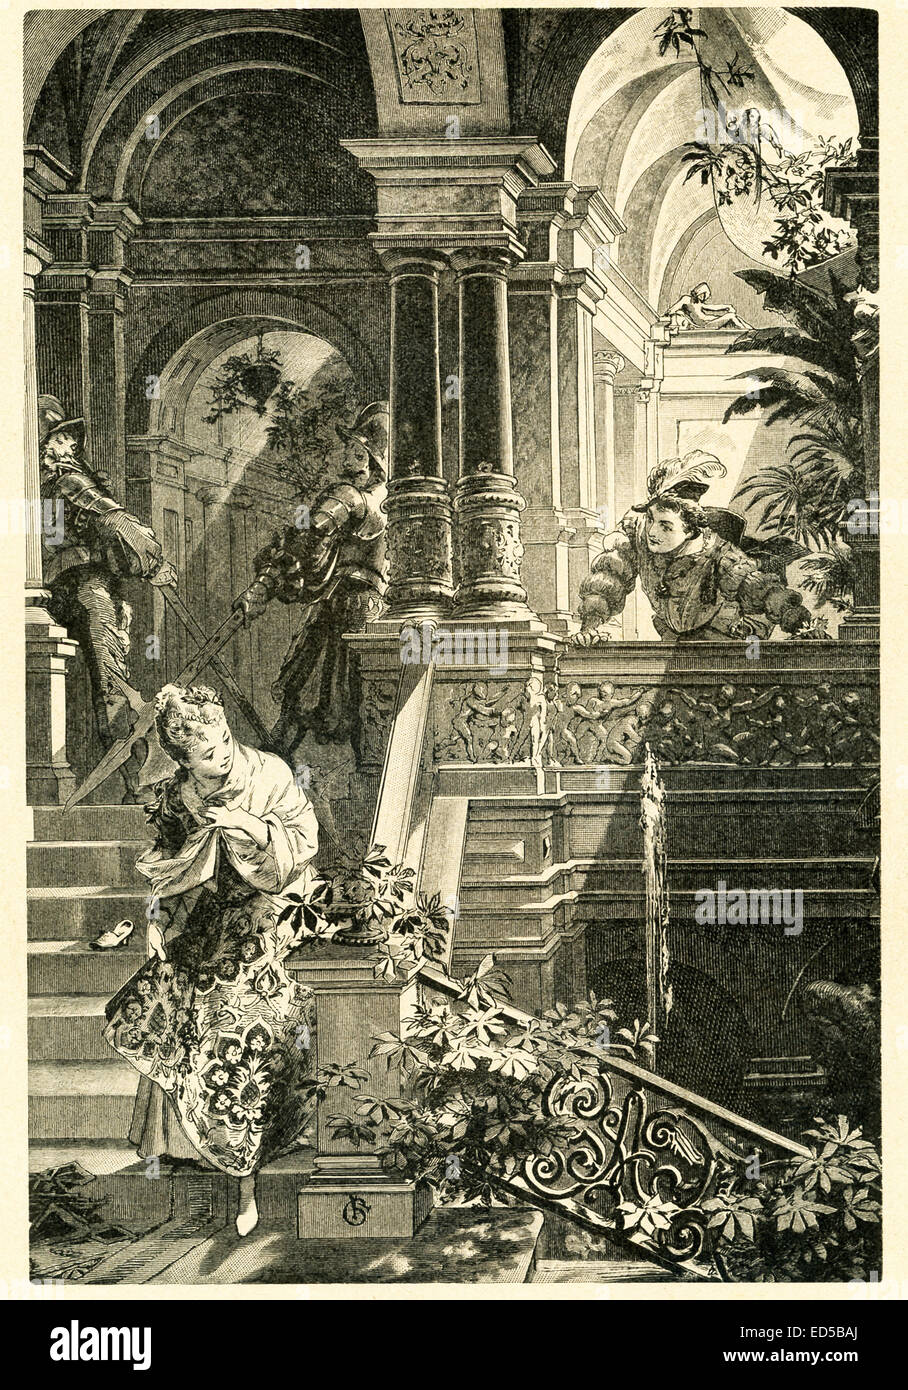 En 1812, les frères Grimm, Jacob et Wilhelm, publié contes pour enfants, une collection contes allemands. Cette illustration accompagnée de l'histoire 'Cinderella' et montre en laissant la balle de Cendrillon et le prince dans une course pour rentrer à la maison avant minuit. Regardez de près et vous pouvez voir la chaussure qui laisse derrière lui, à tort, Cendrillon dans sa hâte sur l'escalier. Cette image est de Grimms Eventyr (Grimm's Fairy Tales) par Carl Ewald, publié en 1922. Le frontispice a l'illustrations de Philip Grot Johann et R. Leinweber. Johann était un célèbre illustrateur allemand et n'pièces f Banque D'Images